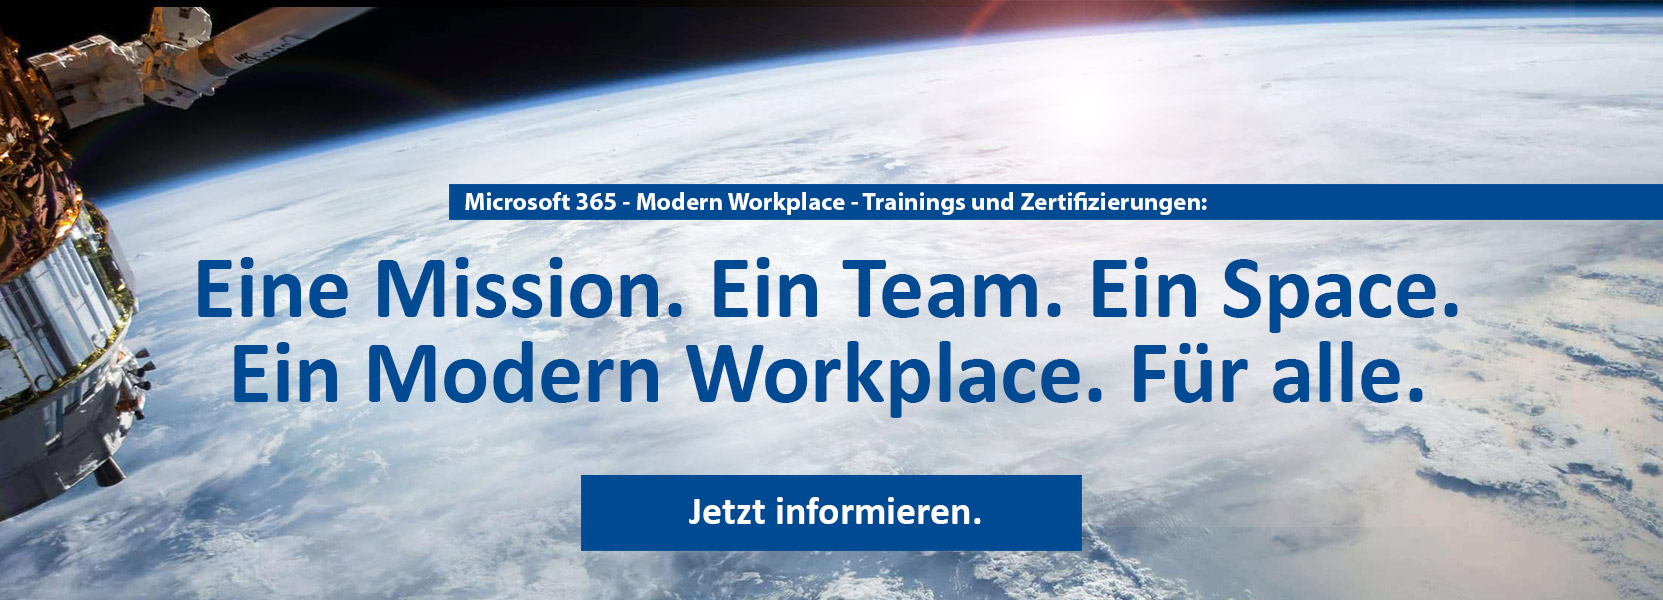 New Horizons - Microsoft 365 - Modern Workplace